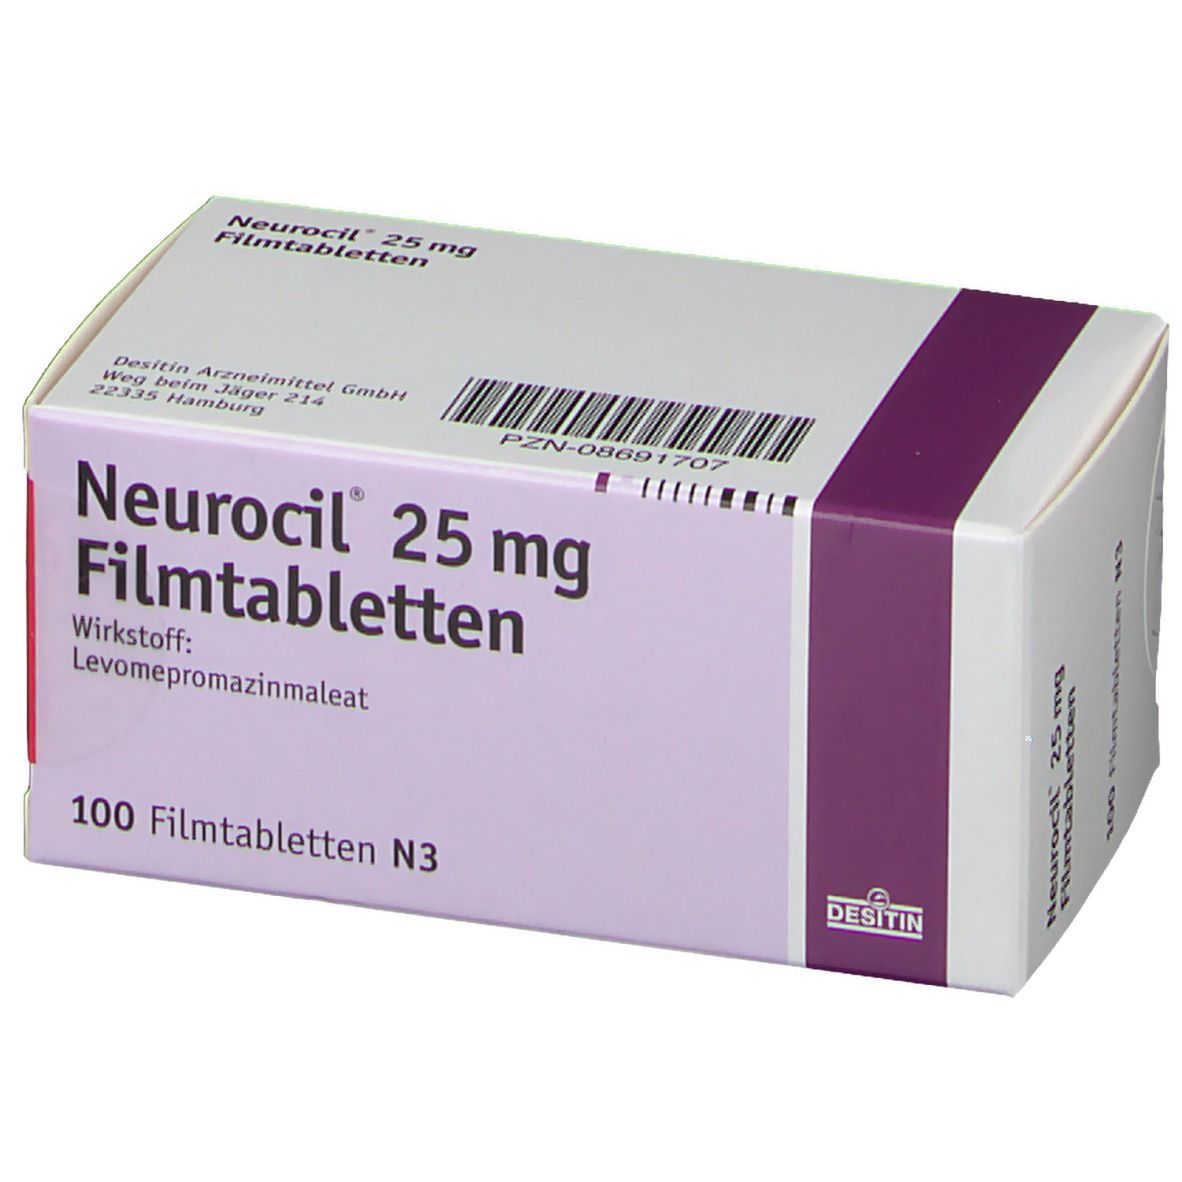 Neurocil® 25 mg